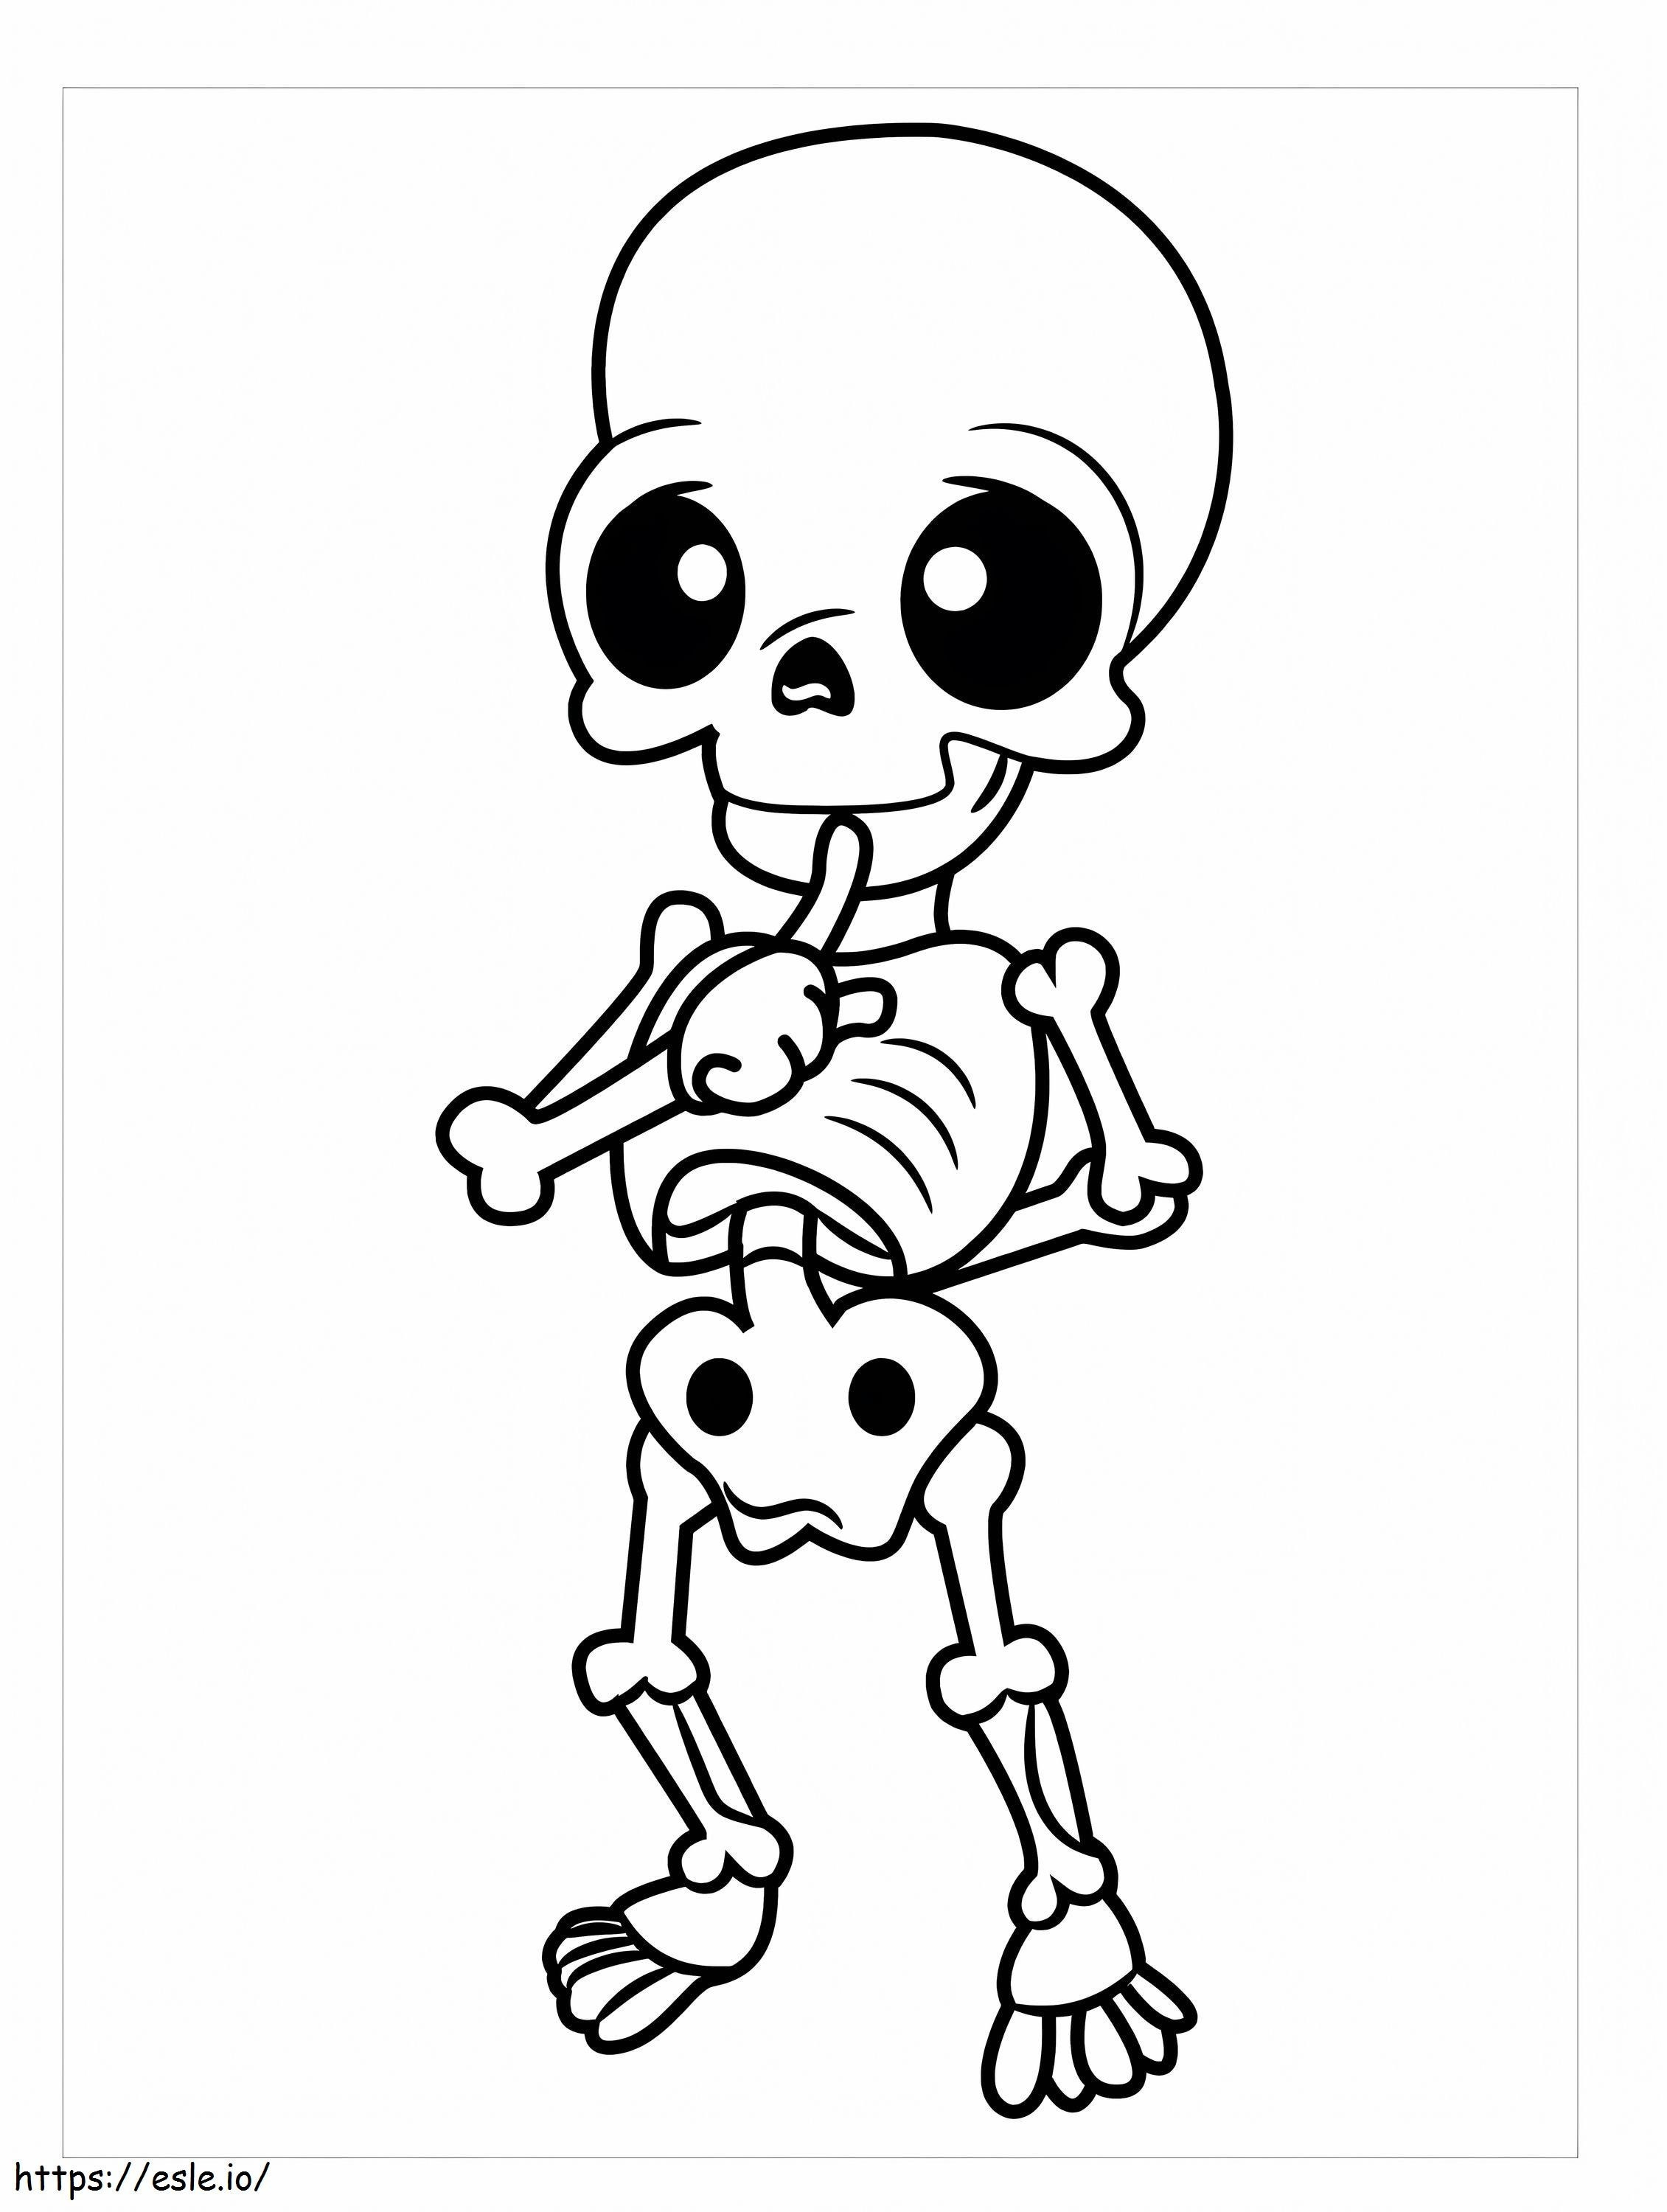 Chibi Skeleton coloring page